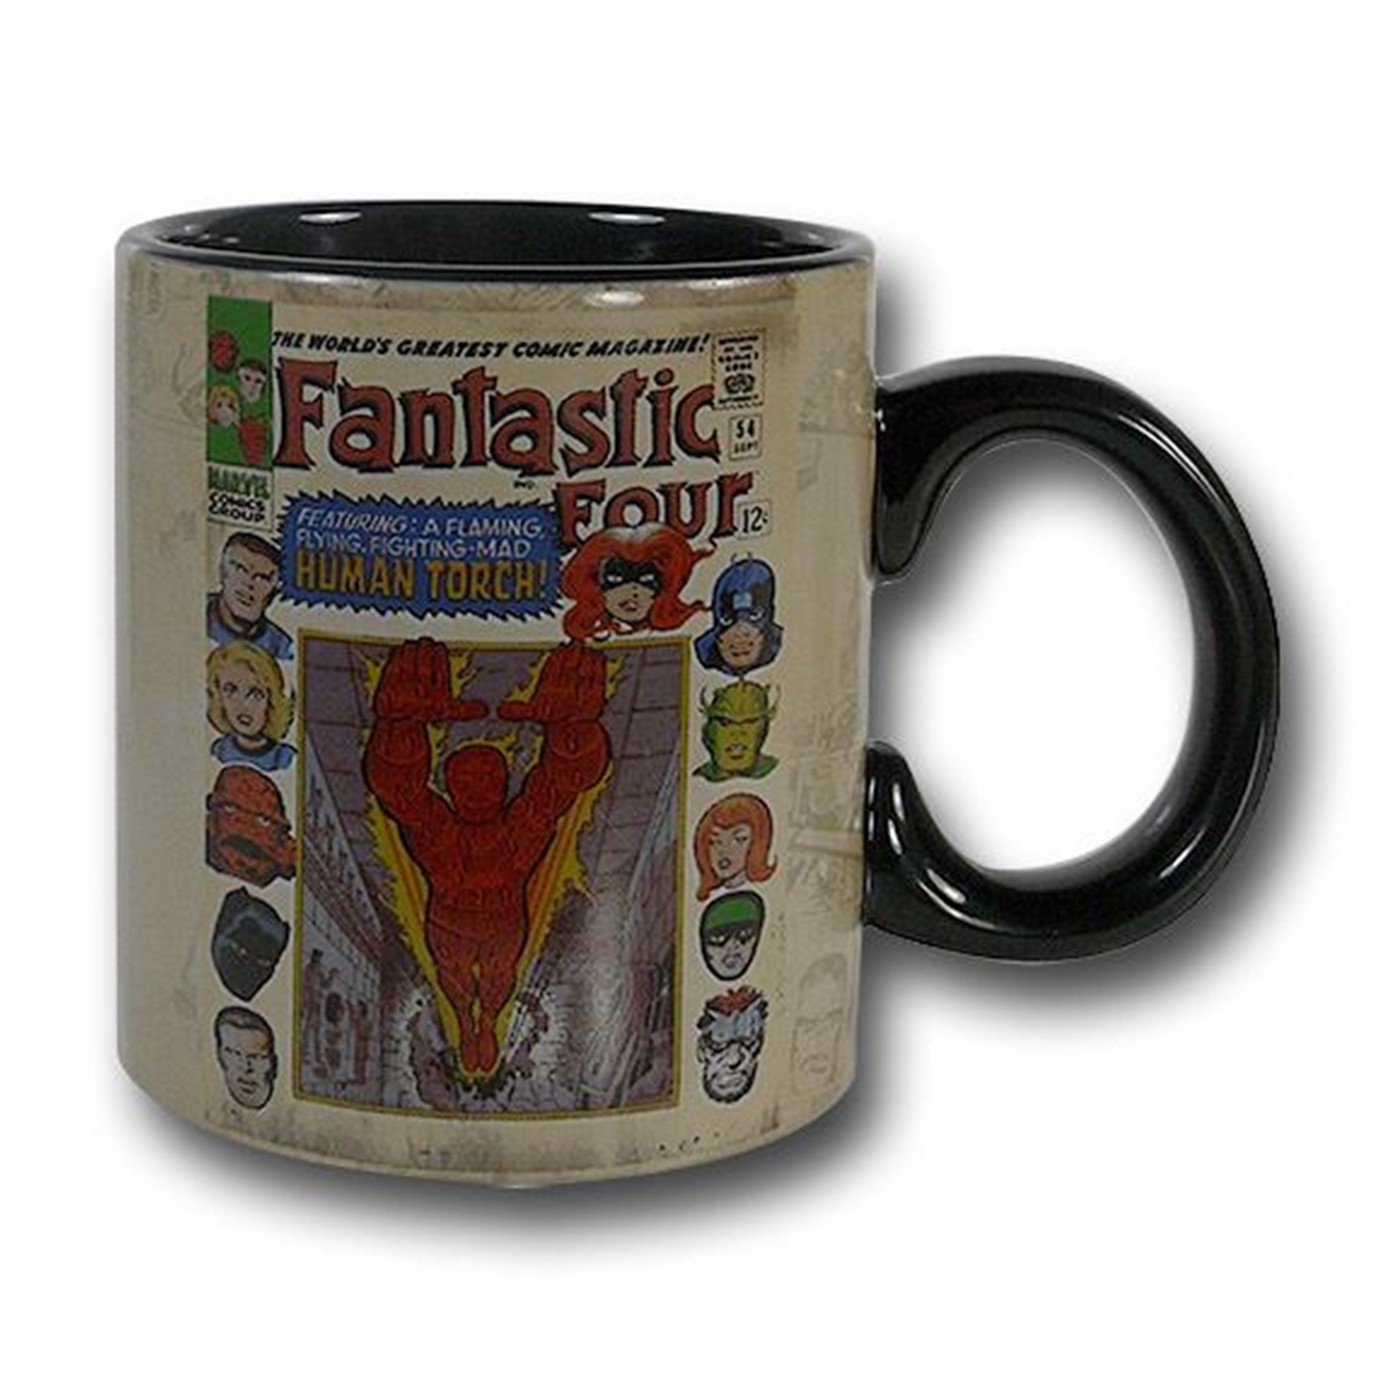 Fantastic Four #54 Cover Mug